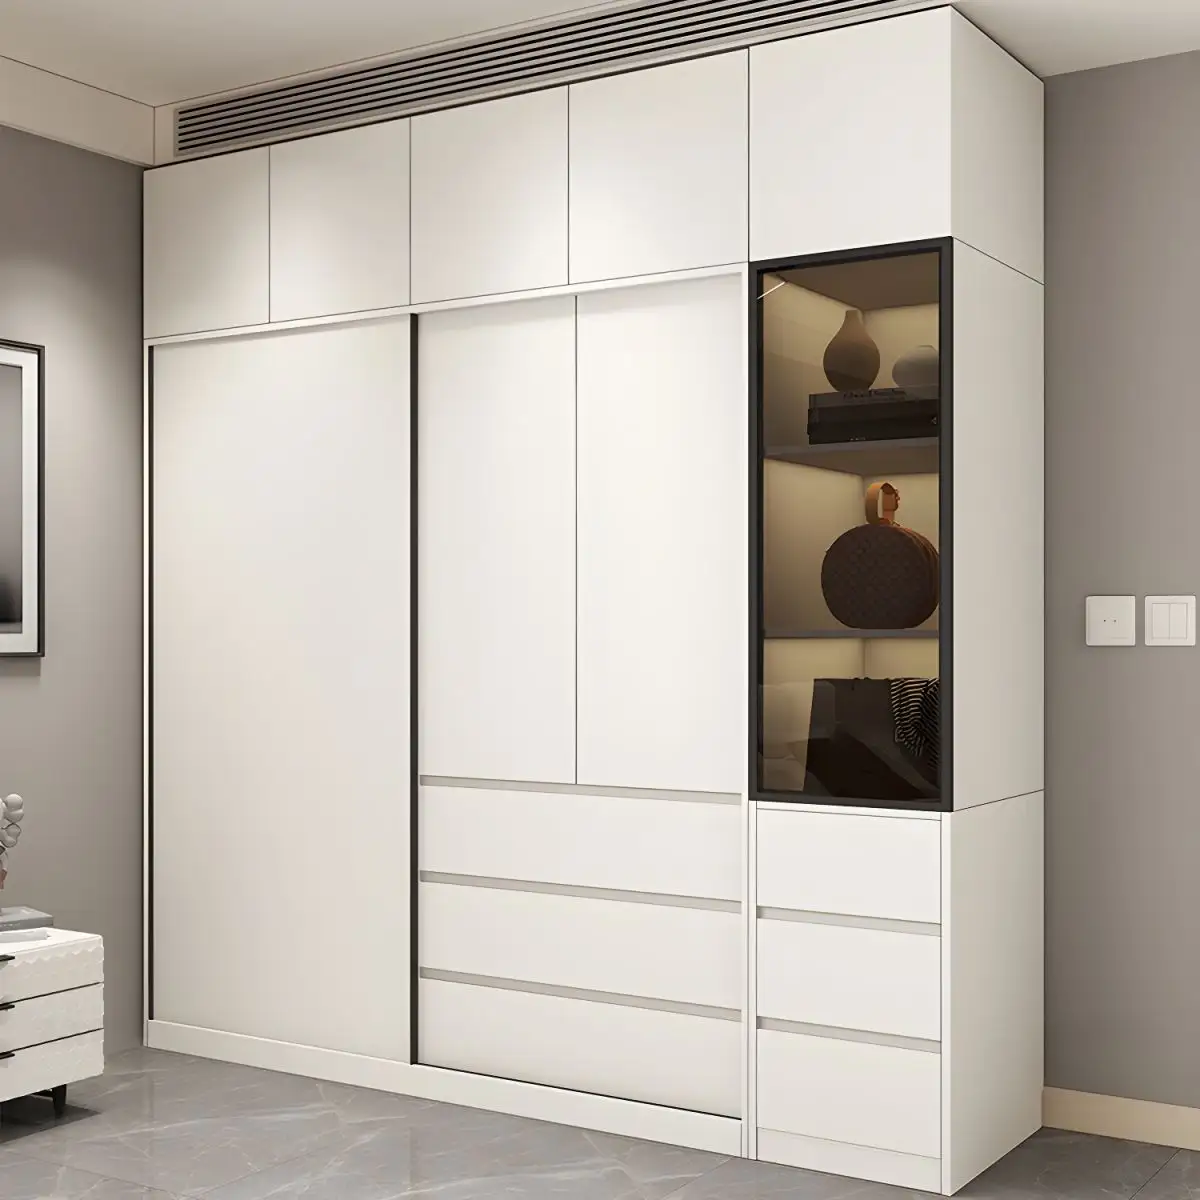 Moderno luxo quarto personalizado armário organizador rotativo guarda-roupa roupas armazenamento prateleiras combinação móveis wardobe madeira